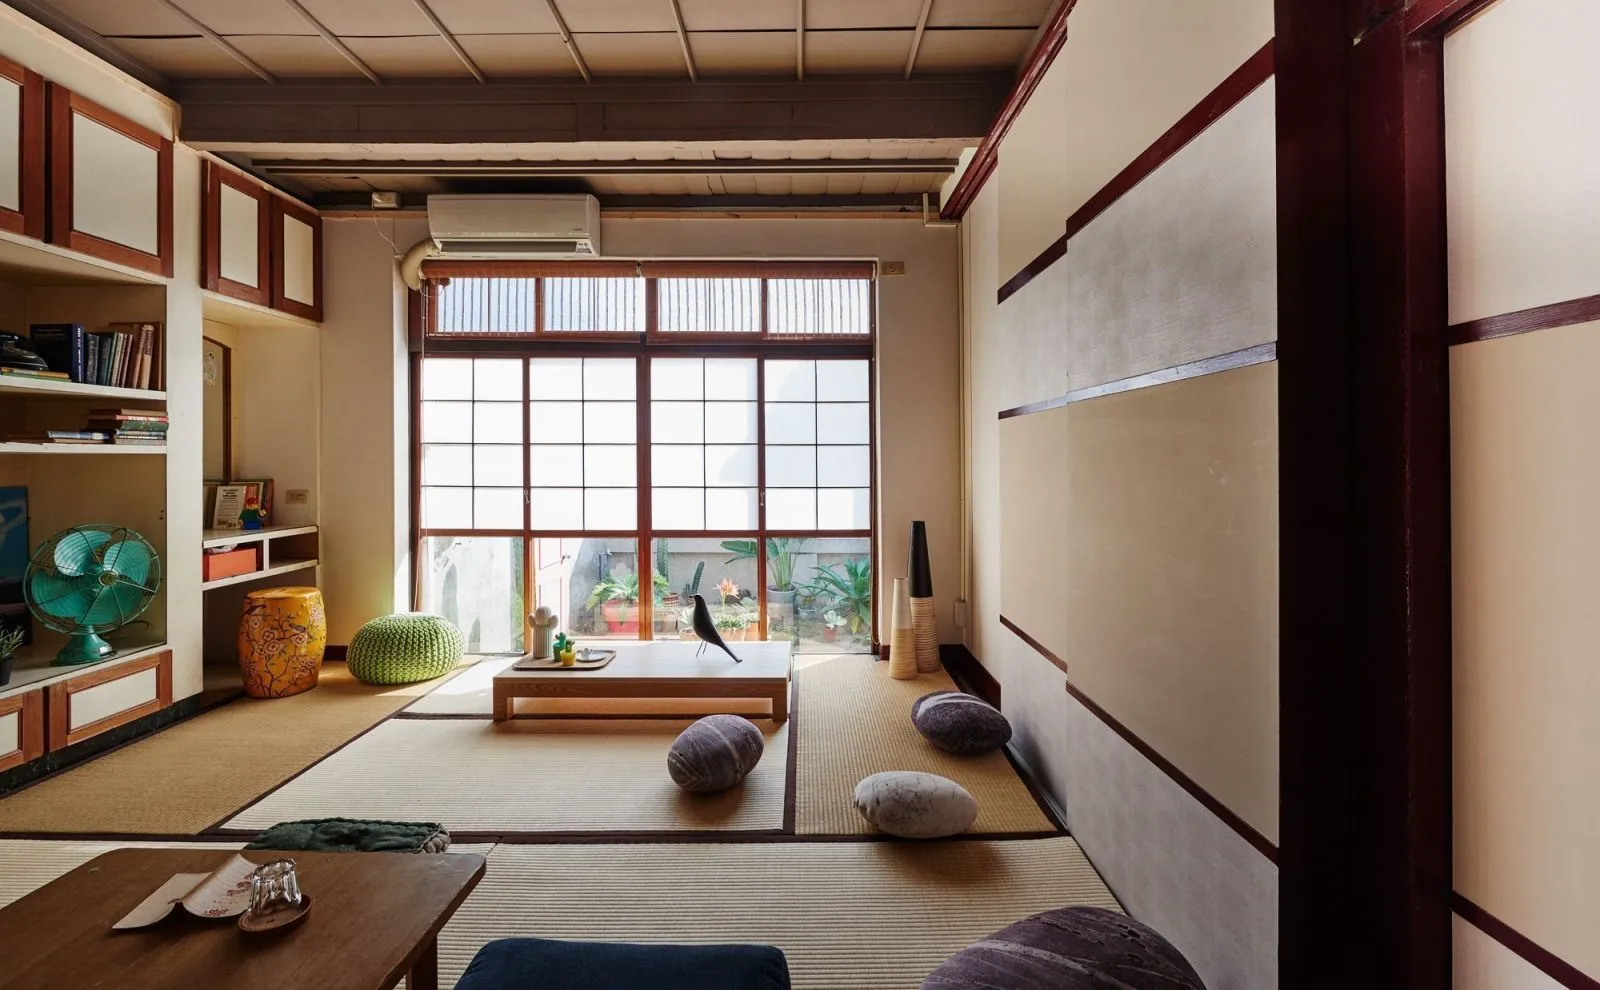 Thiết kế phòng khách kiểu Nhật và những đặc trưng cơ bản